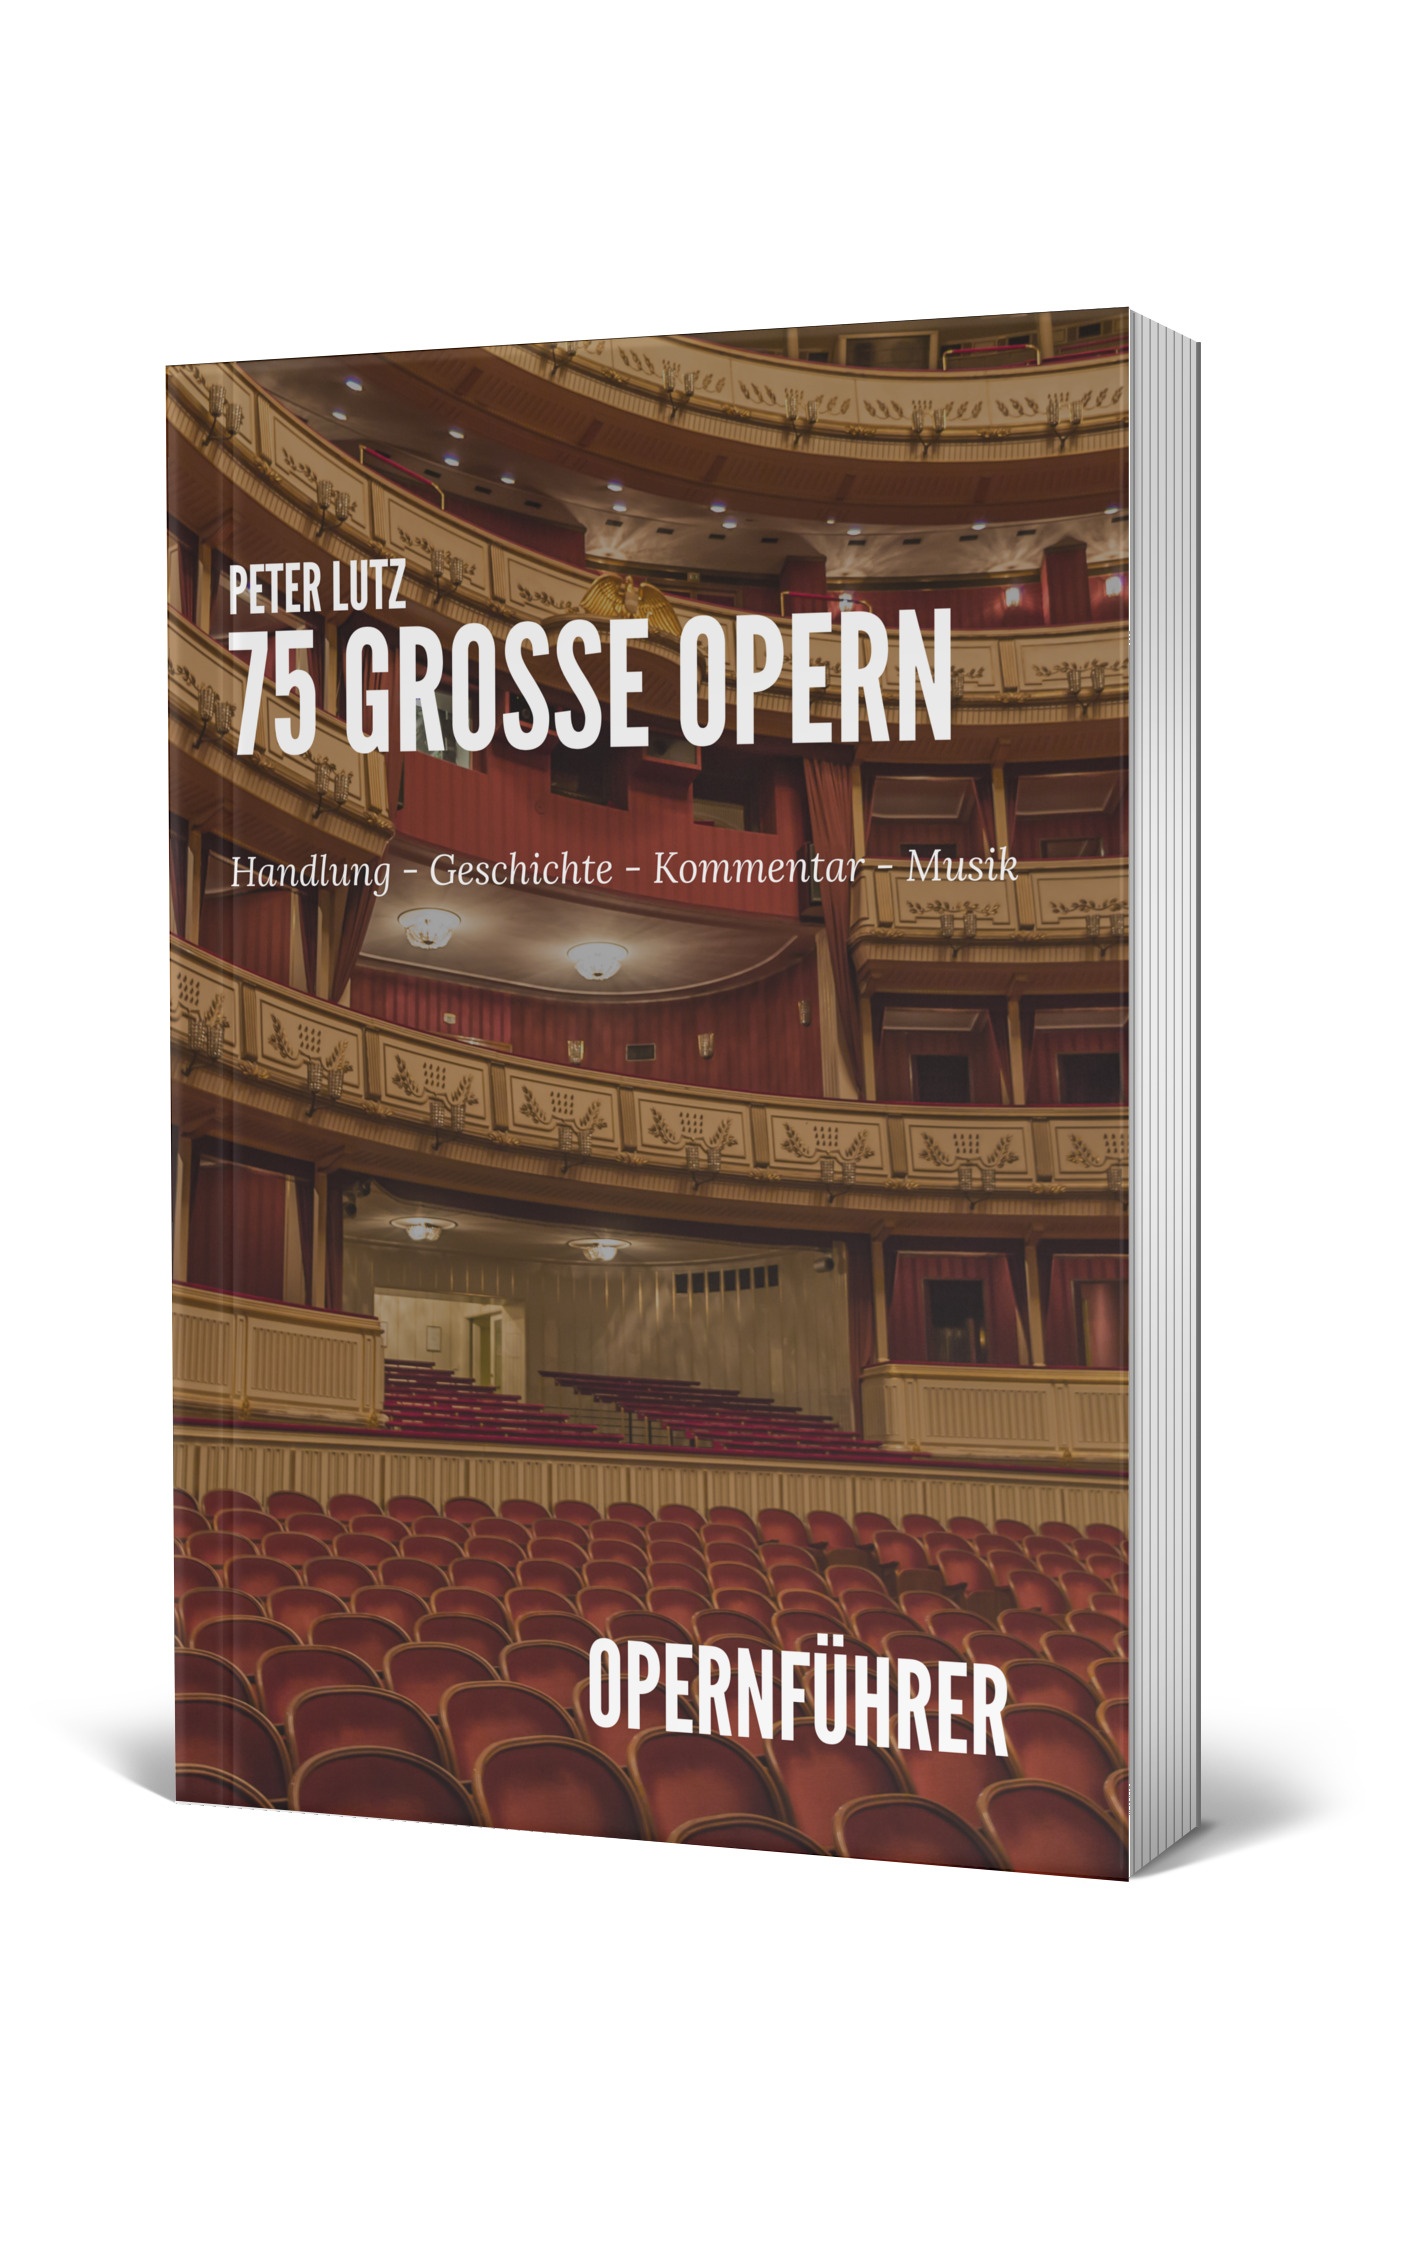 Operaguide, Opernführer, Buch, Book